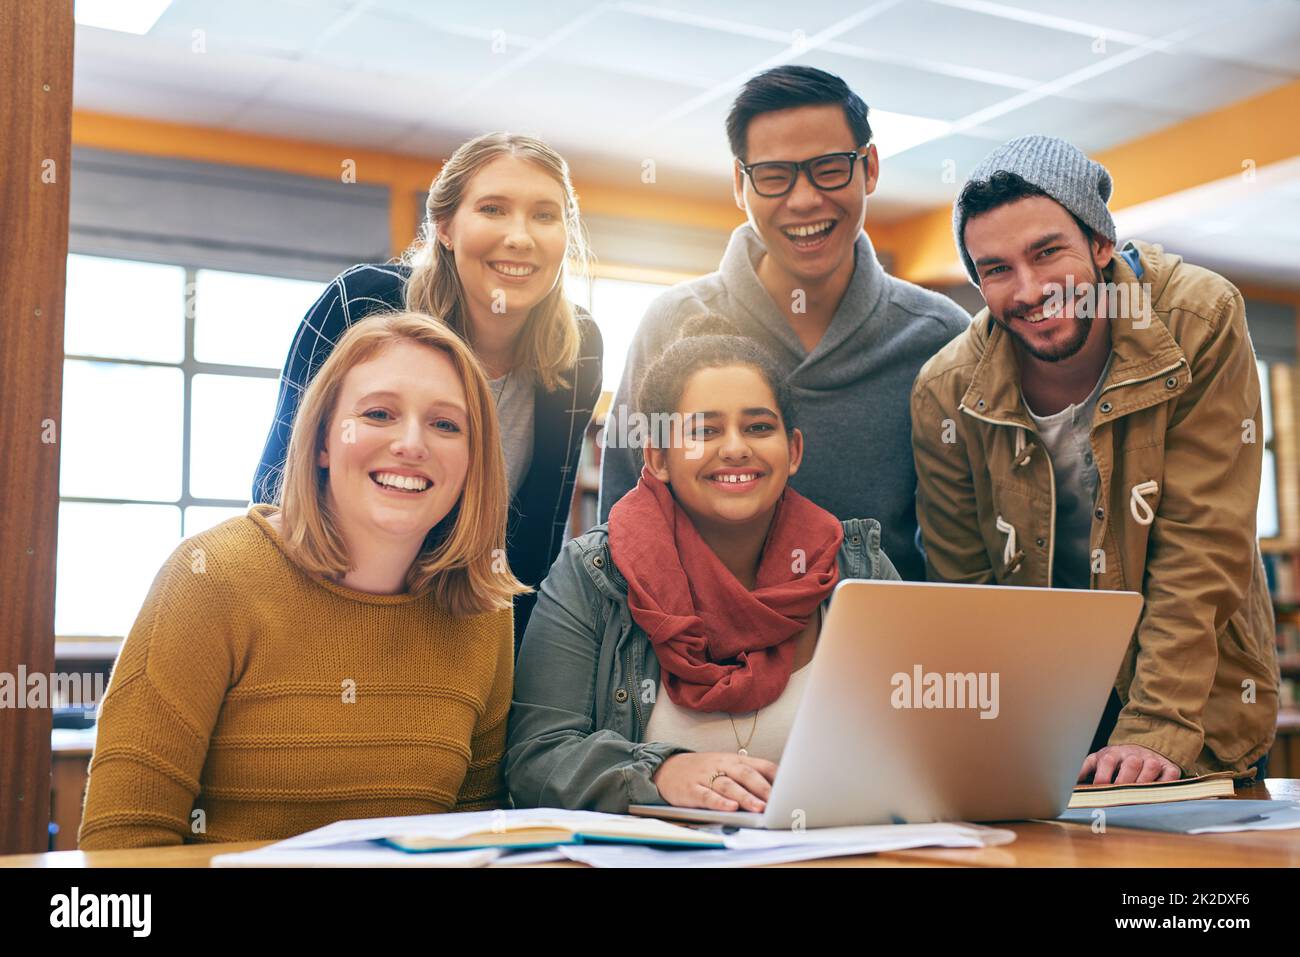 Il se sent un peu mieux lorsque vous étudiez ensemble. Portrait d'un jeune groupe joyeux d'étudiants travaillant ensemble à l'aide d'un ordinateur portable pour étudier pour des examens à l'intérieur d'une bibliothèque. Banque D'Images